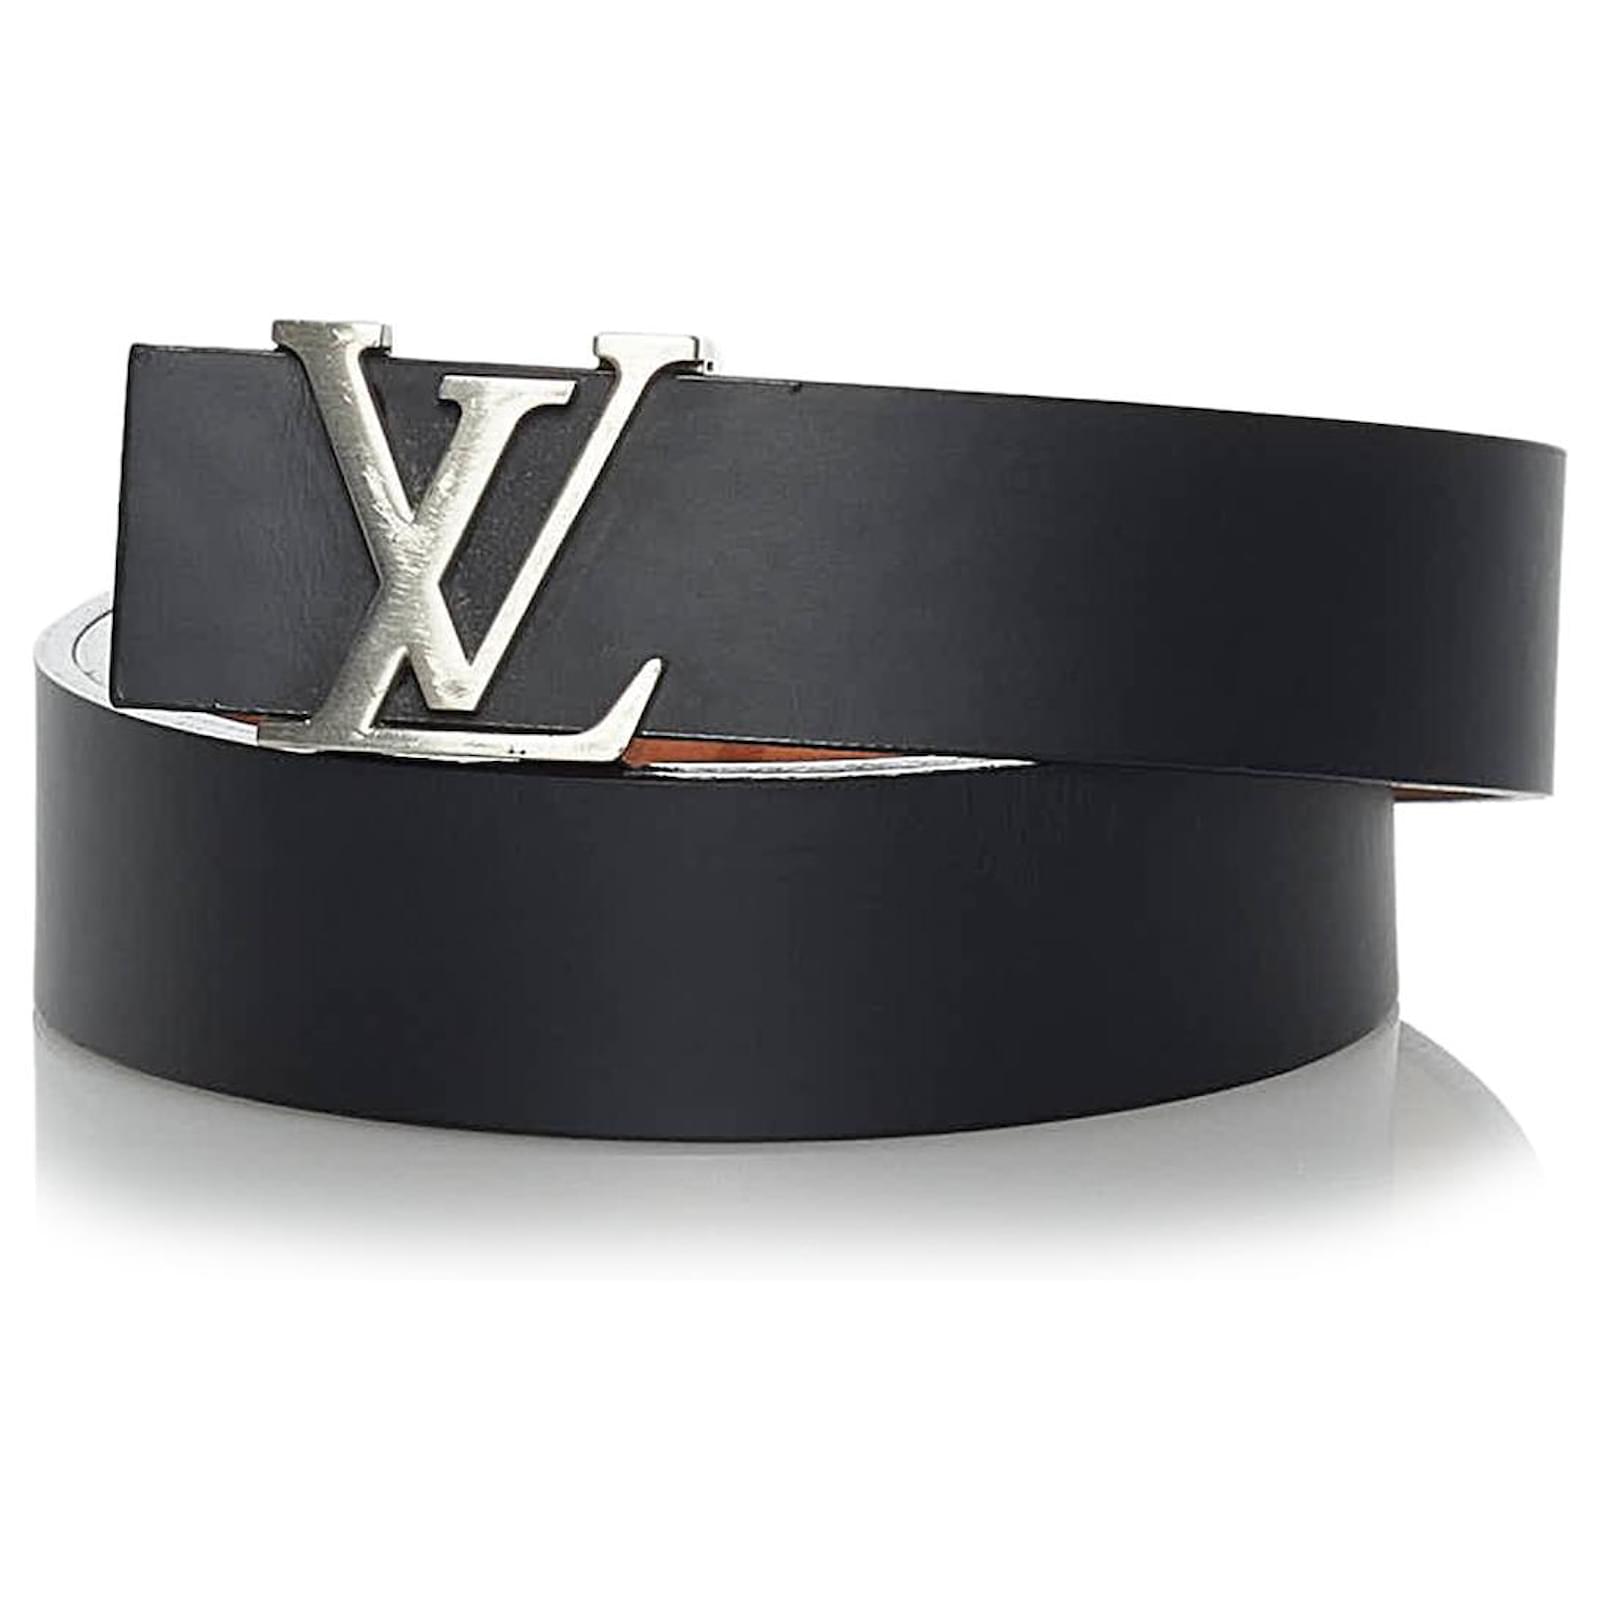 Louis Vuitton Gürtel aus Leder - Silber - Größe 100 - 31941222